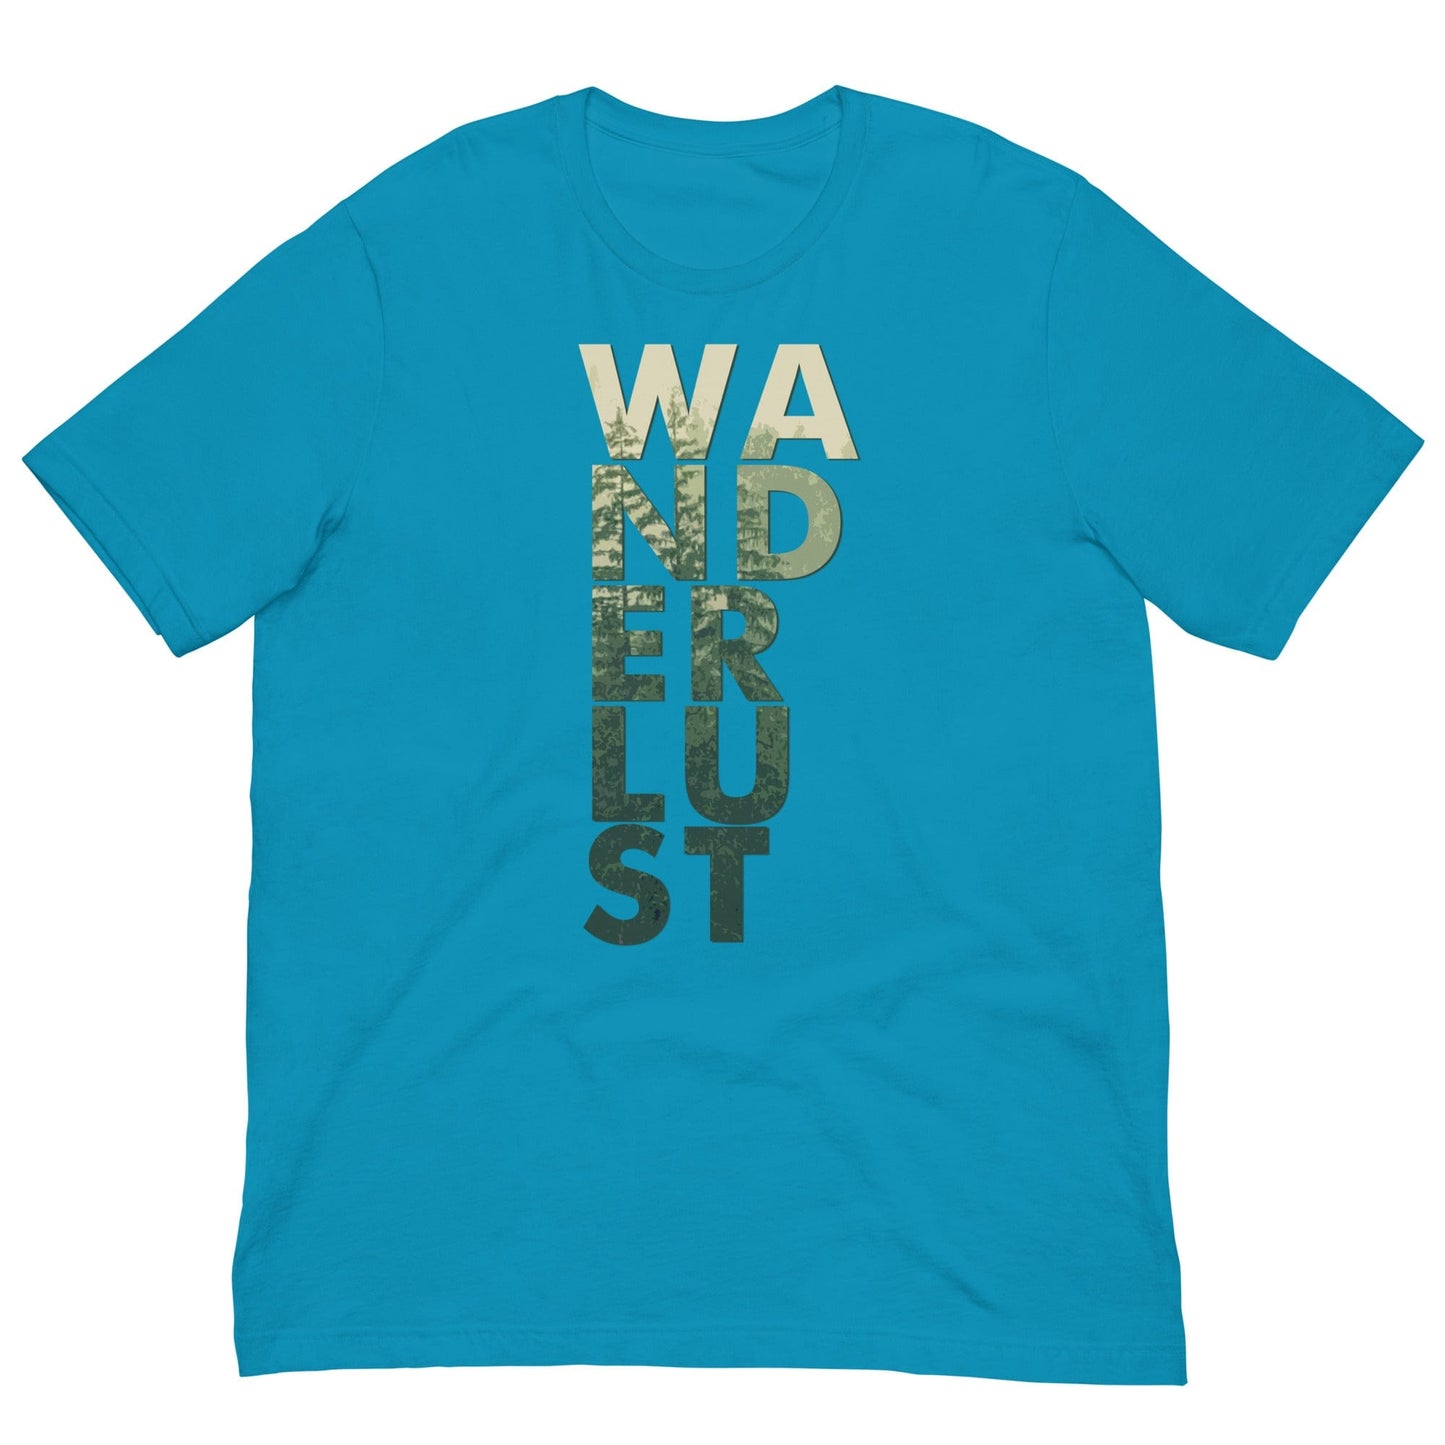 Wanderlust T-shirt Aqua / S